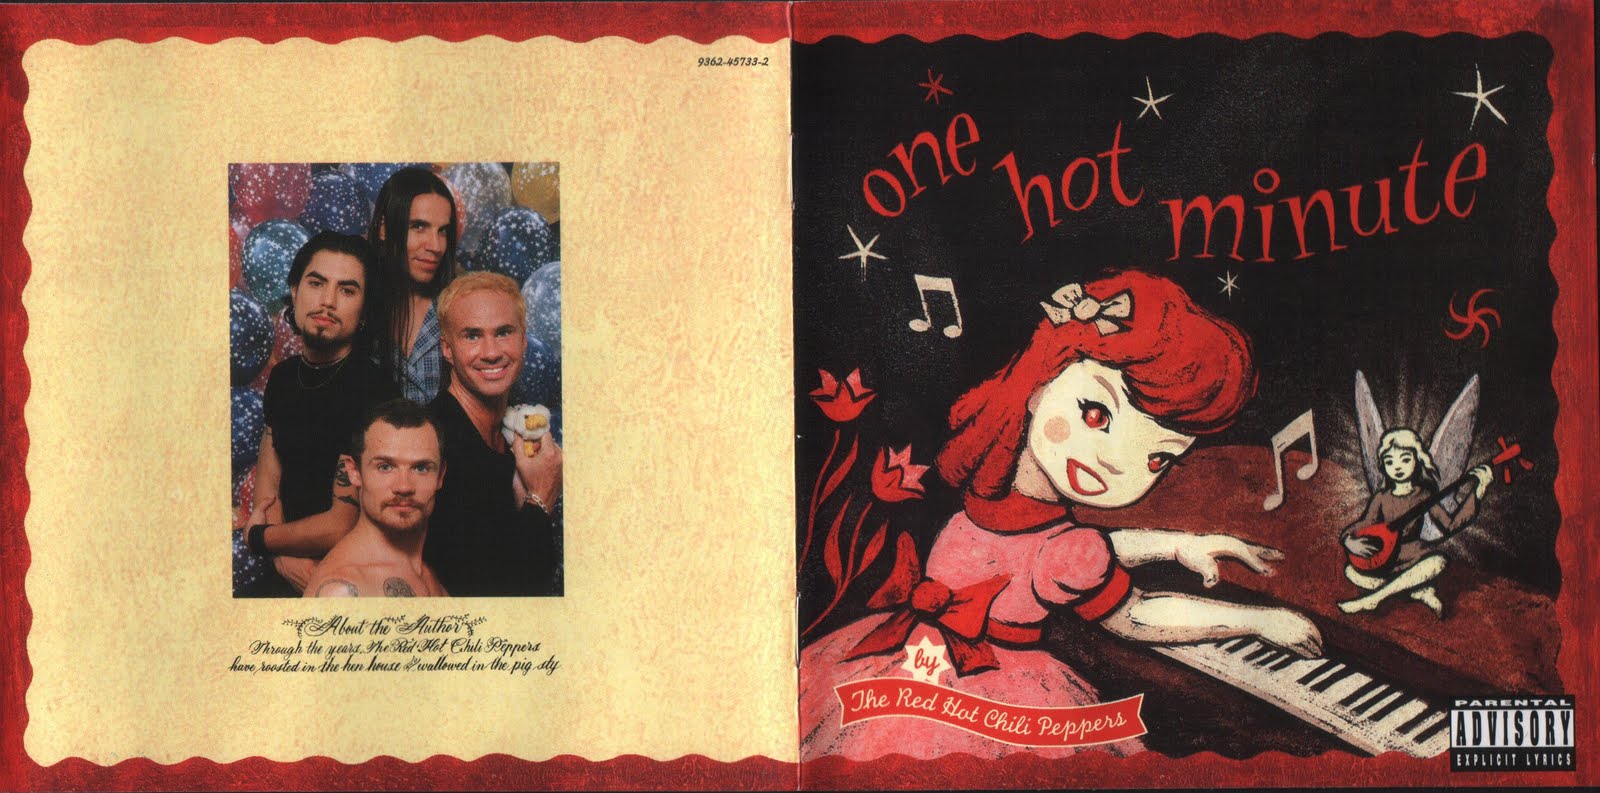 Concurso: Gana el vinilo del «One Hot Minute» de Red Hot Chili Peppers